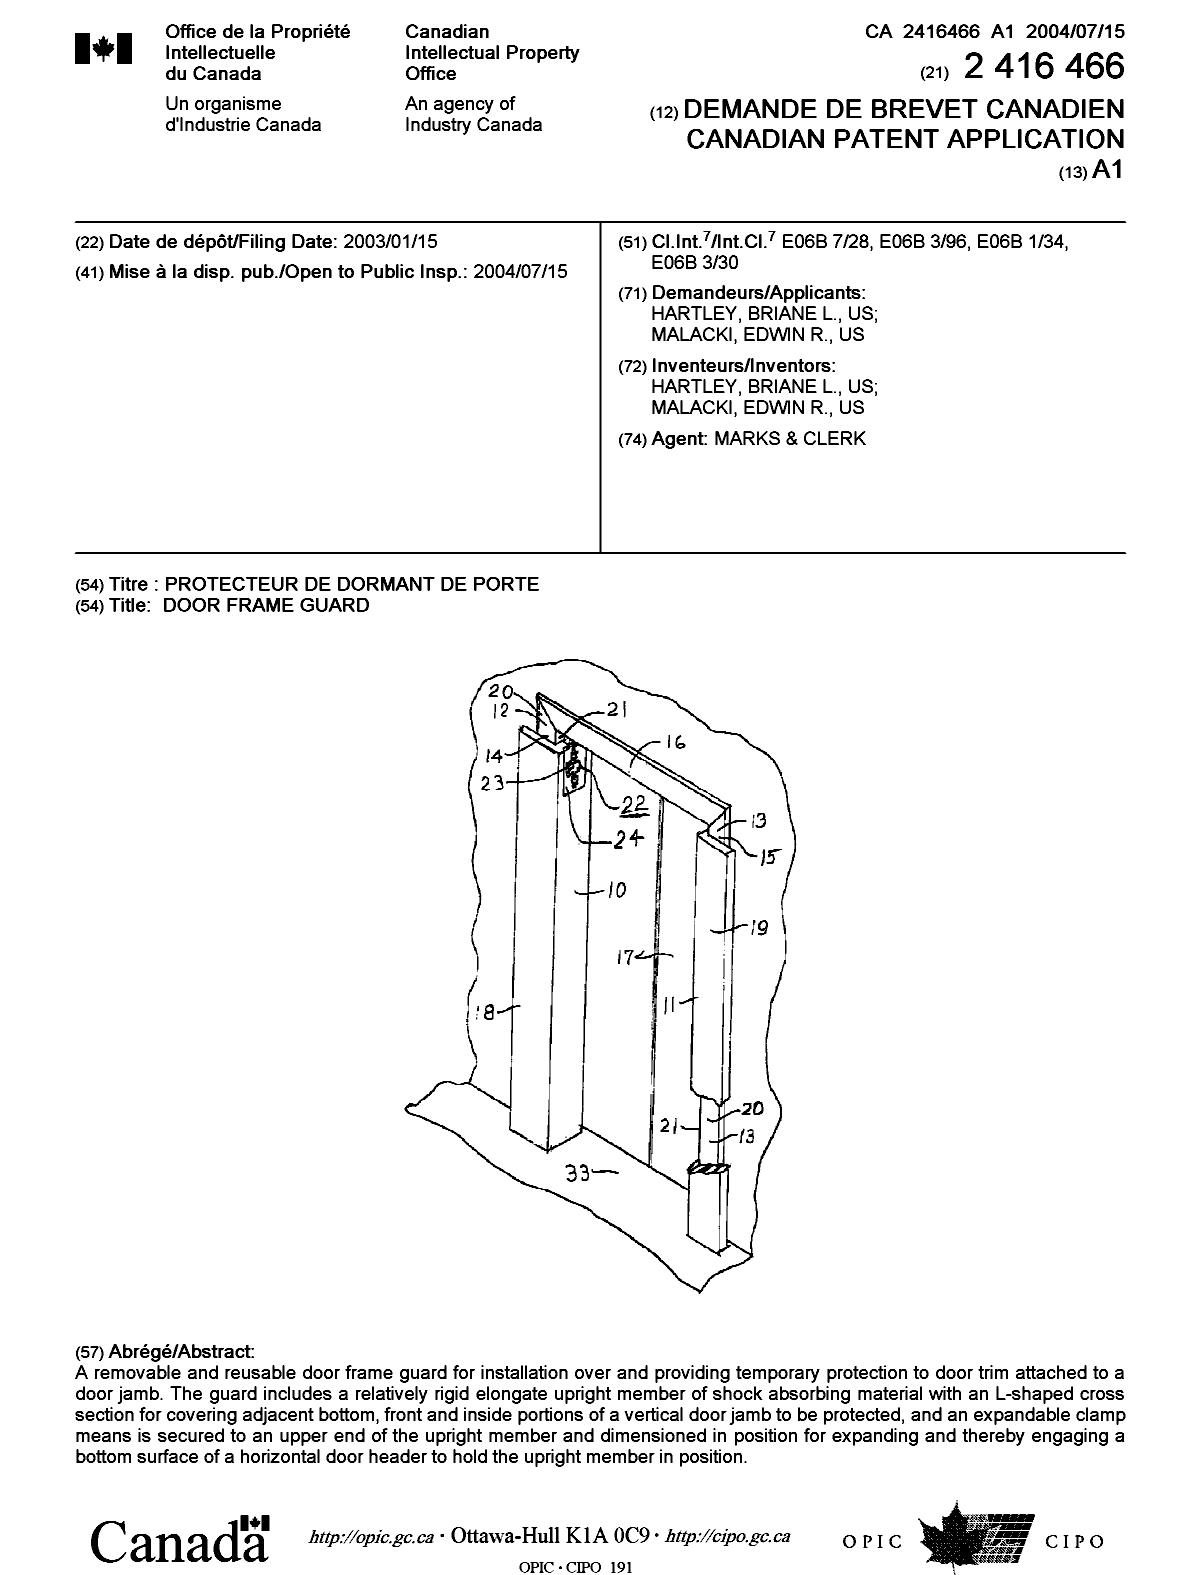 Document de brevet canadien 2416466. Page couverture 20040621. Image 1 de 1